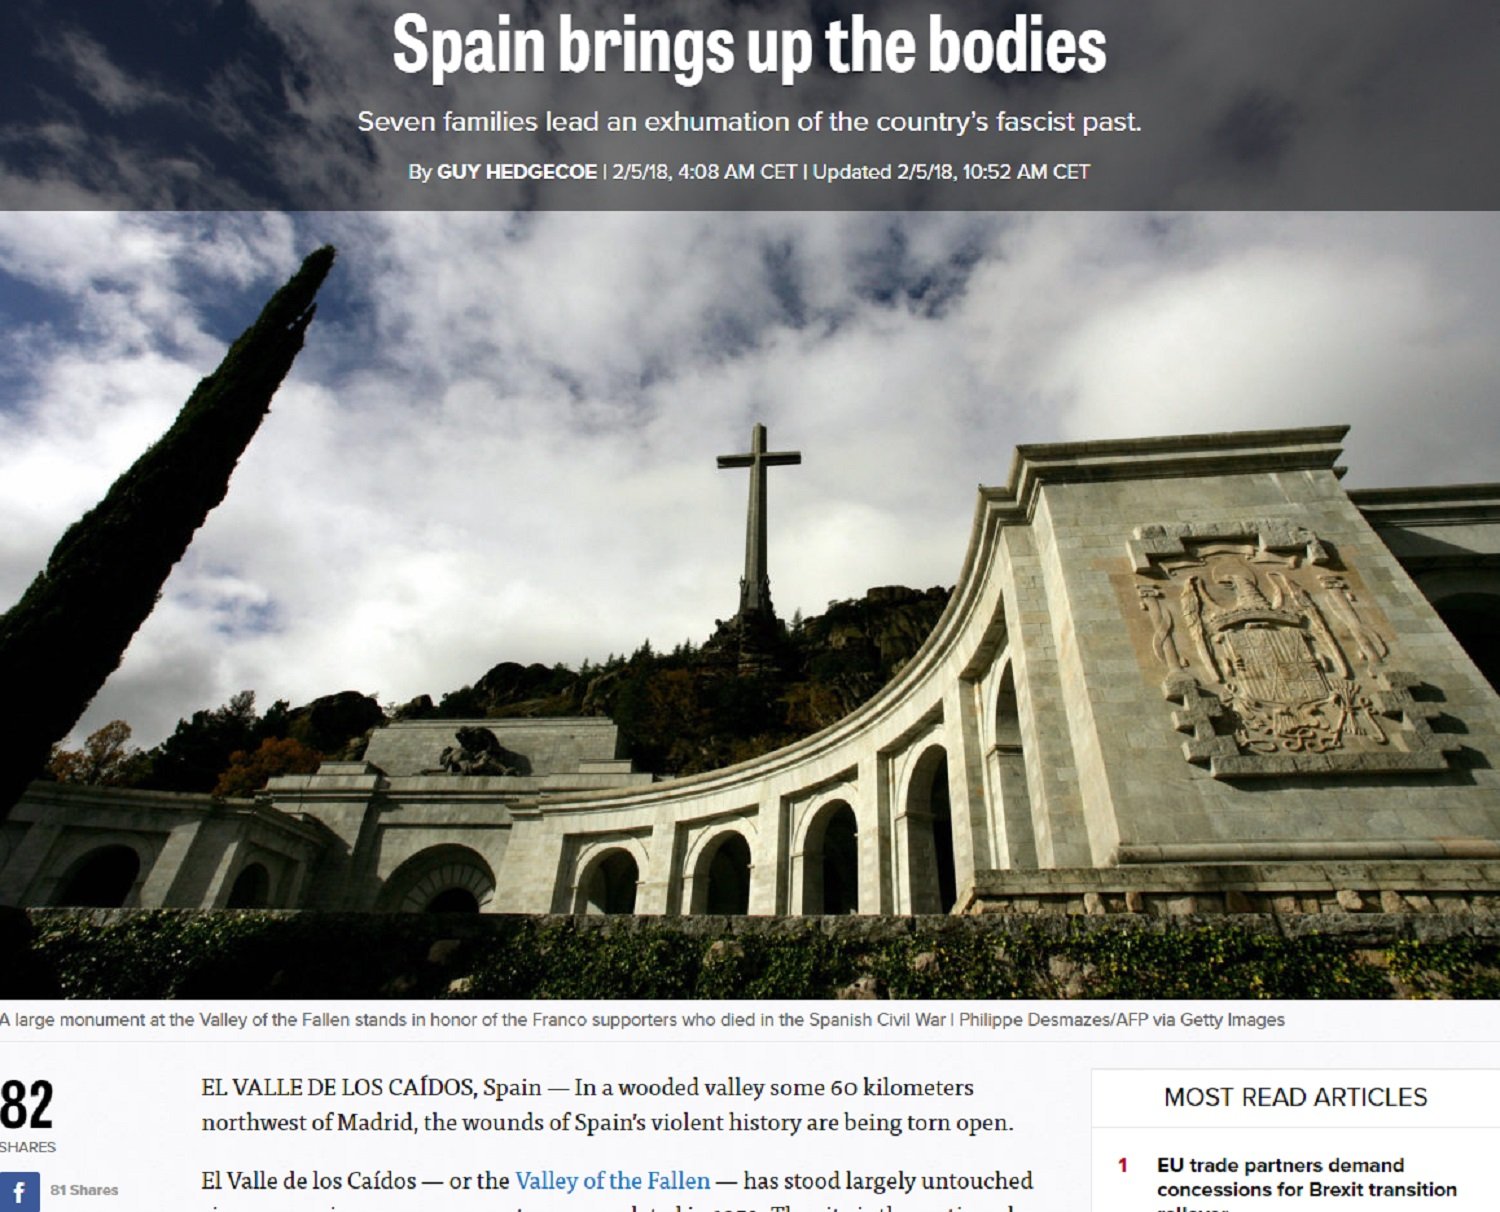 Les demandes d'exhumacions al Valle de los Caídos arriben a 'Politico'